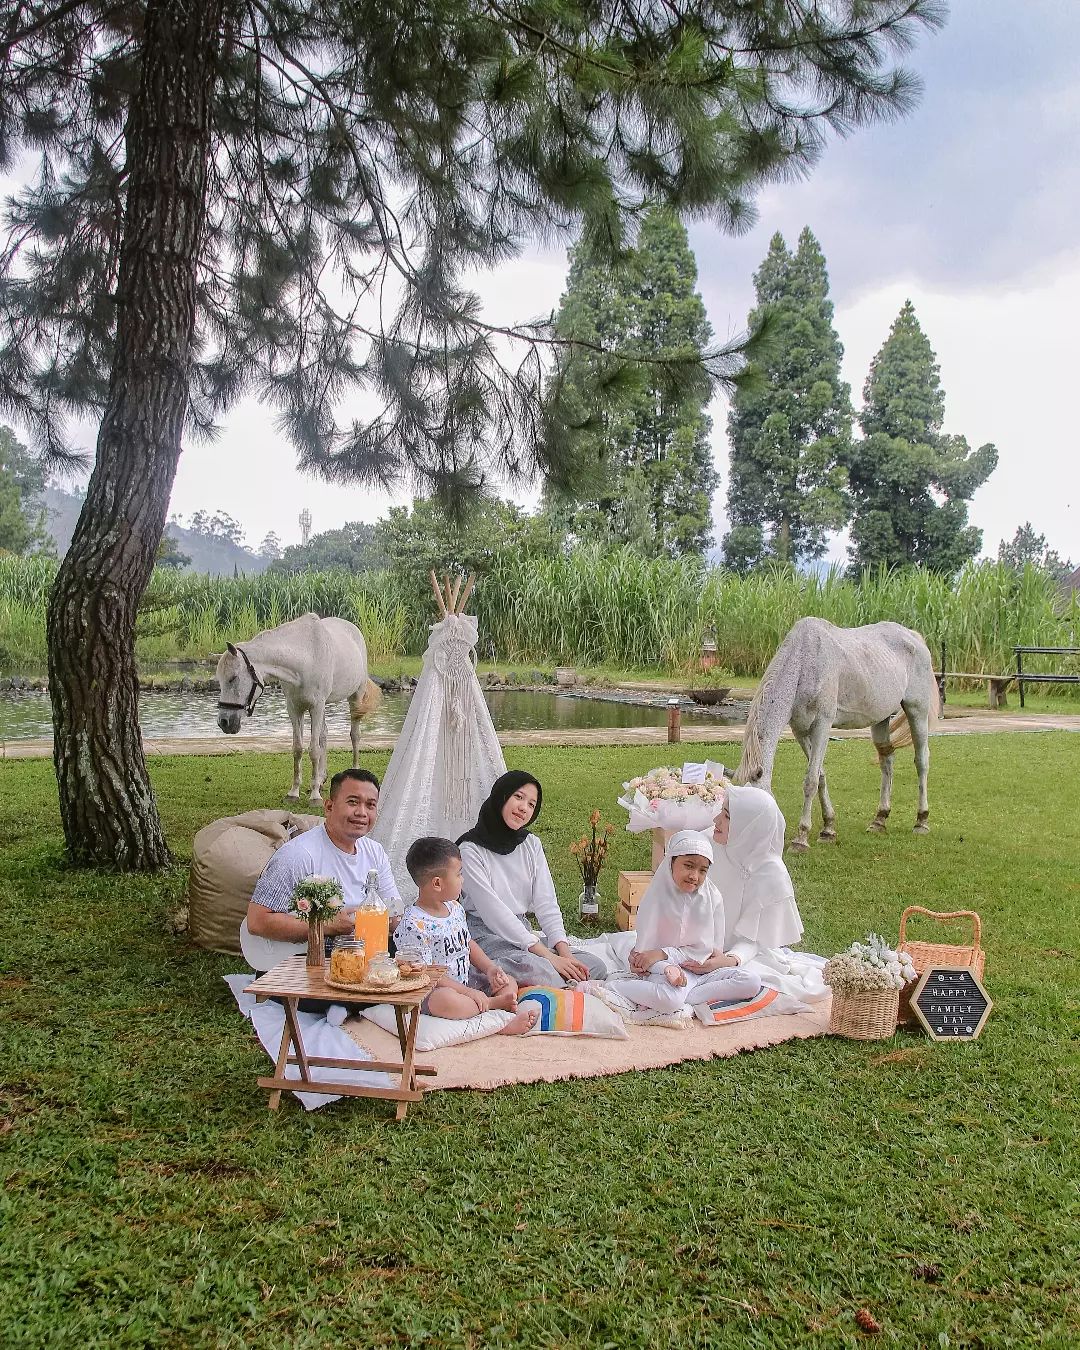 PIknik Keluarga Di Bandung Image From @funpicnic_